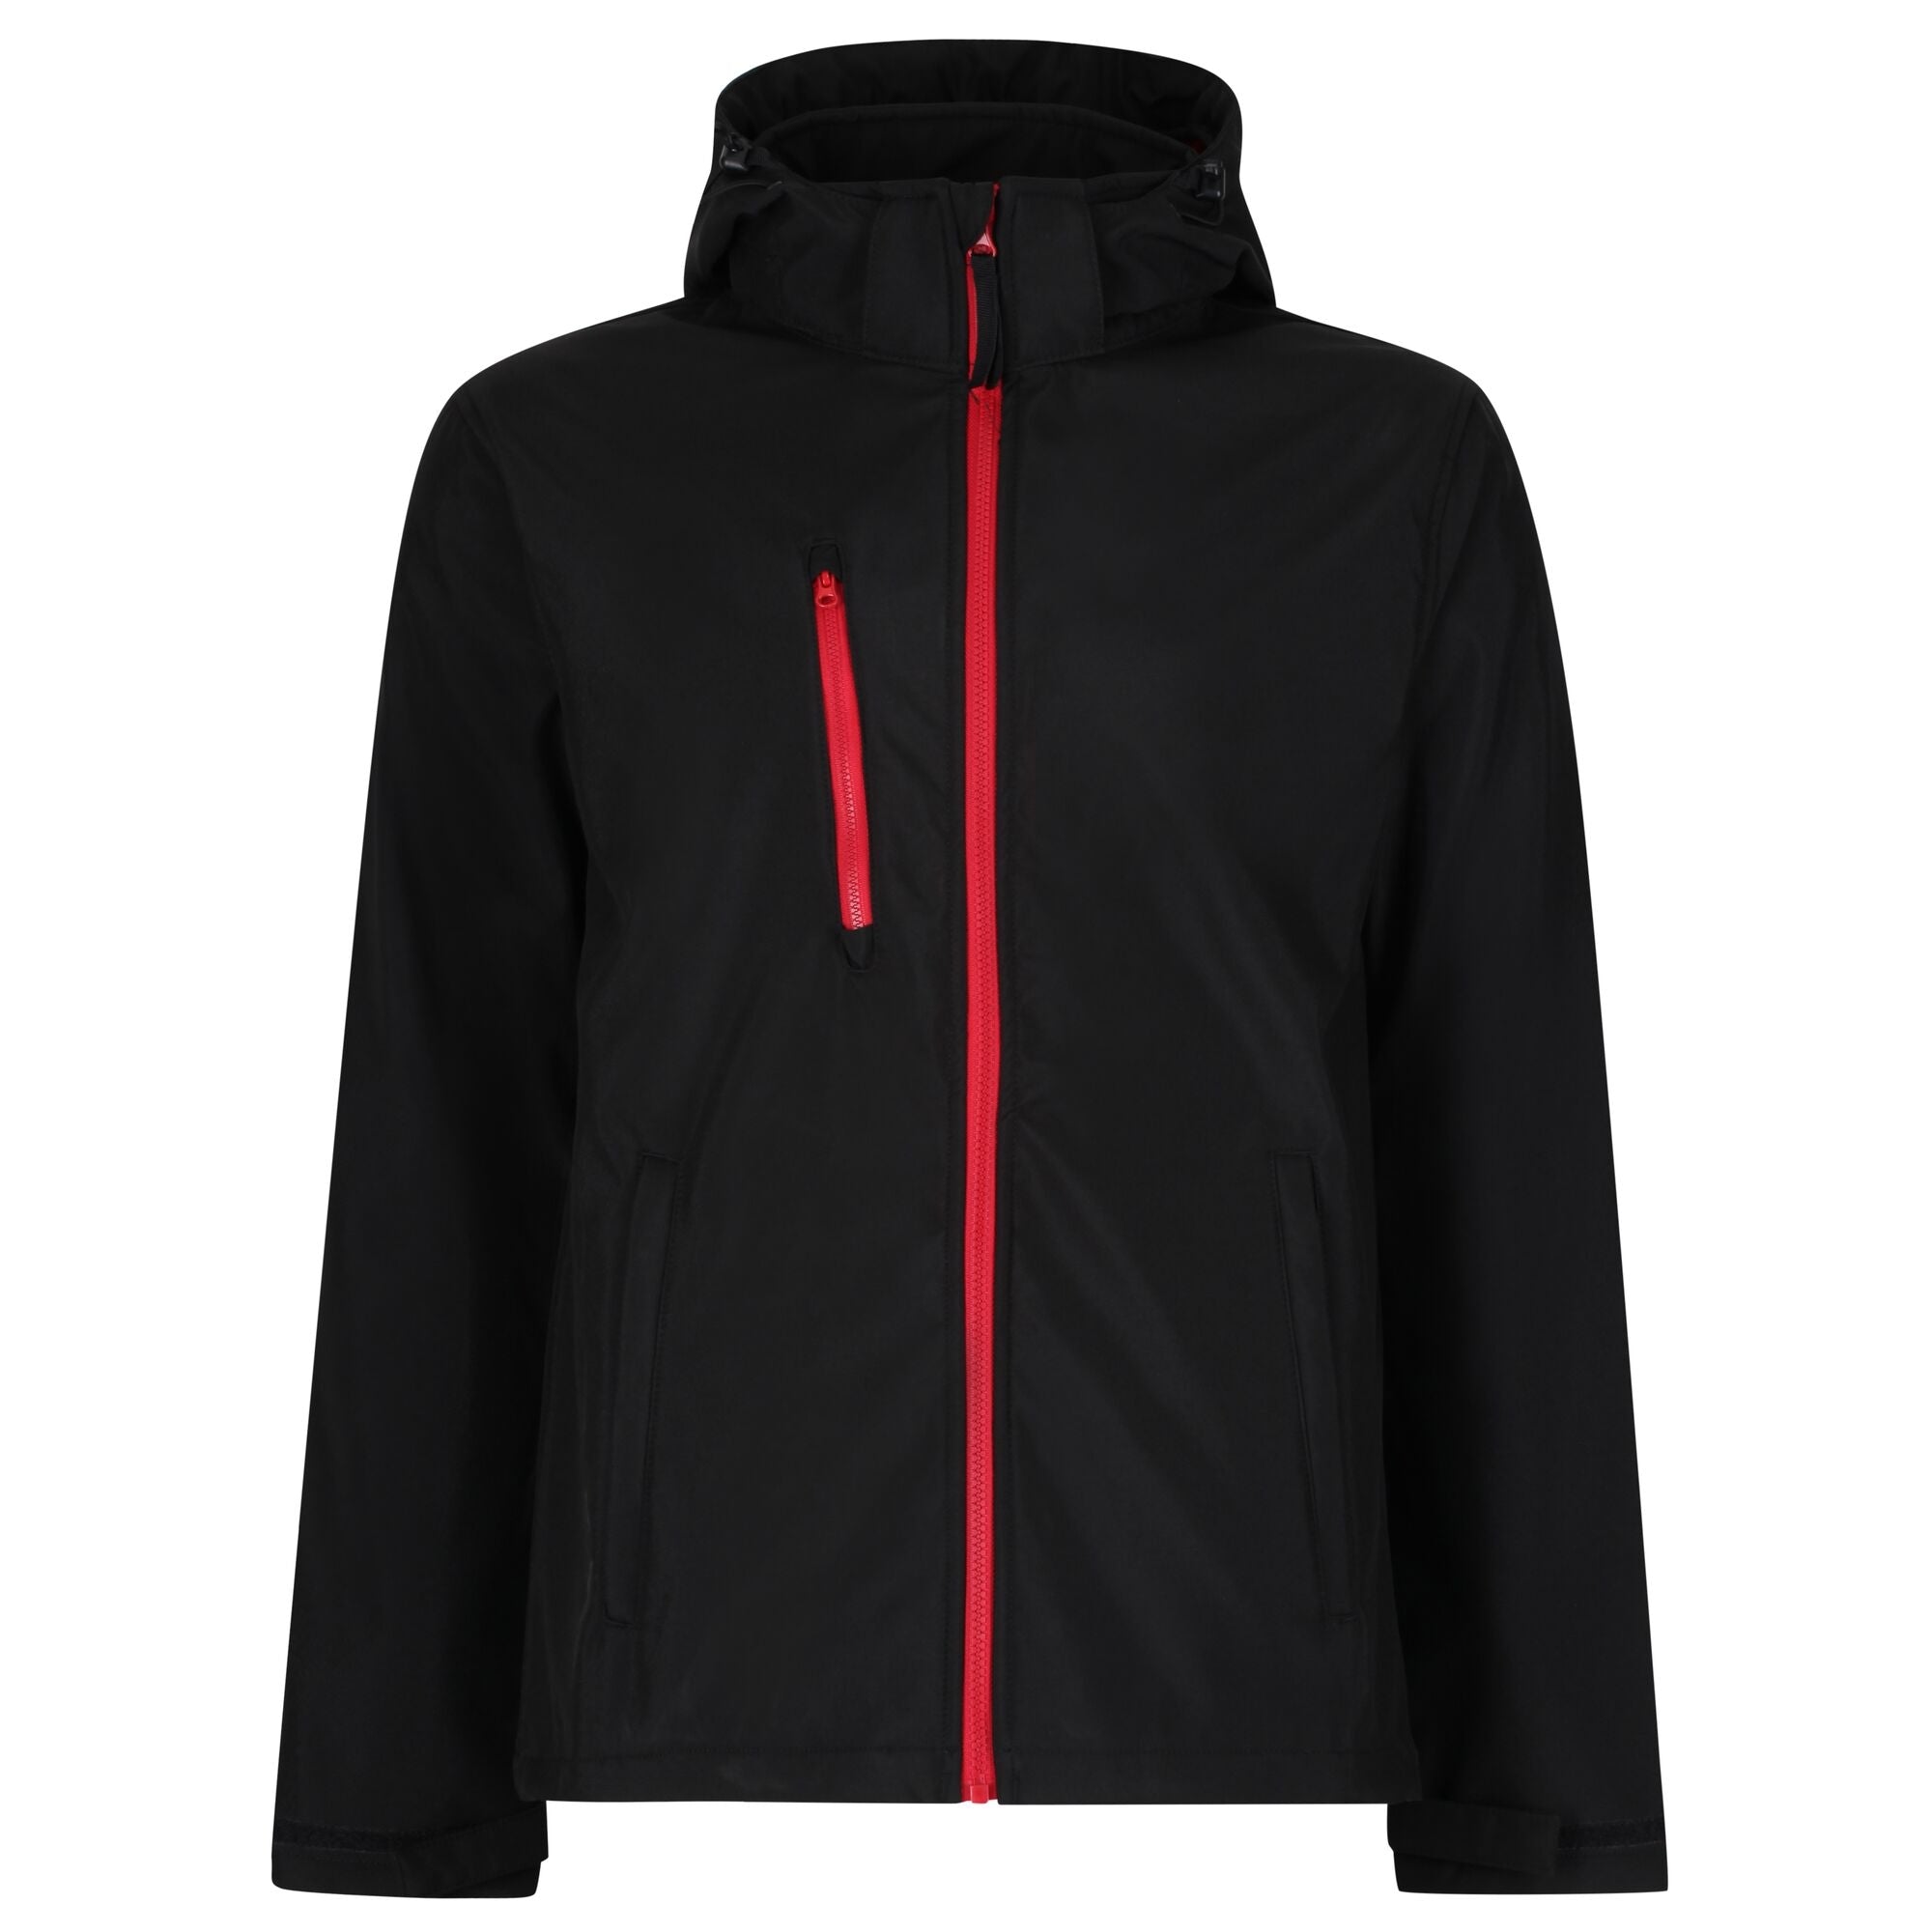 Regatta Venturer 3 Layer Softshell Jacket - Black/Class Red